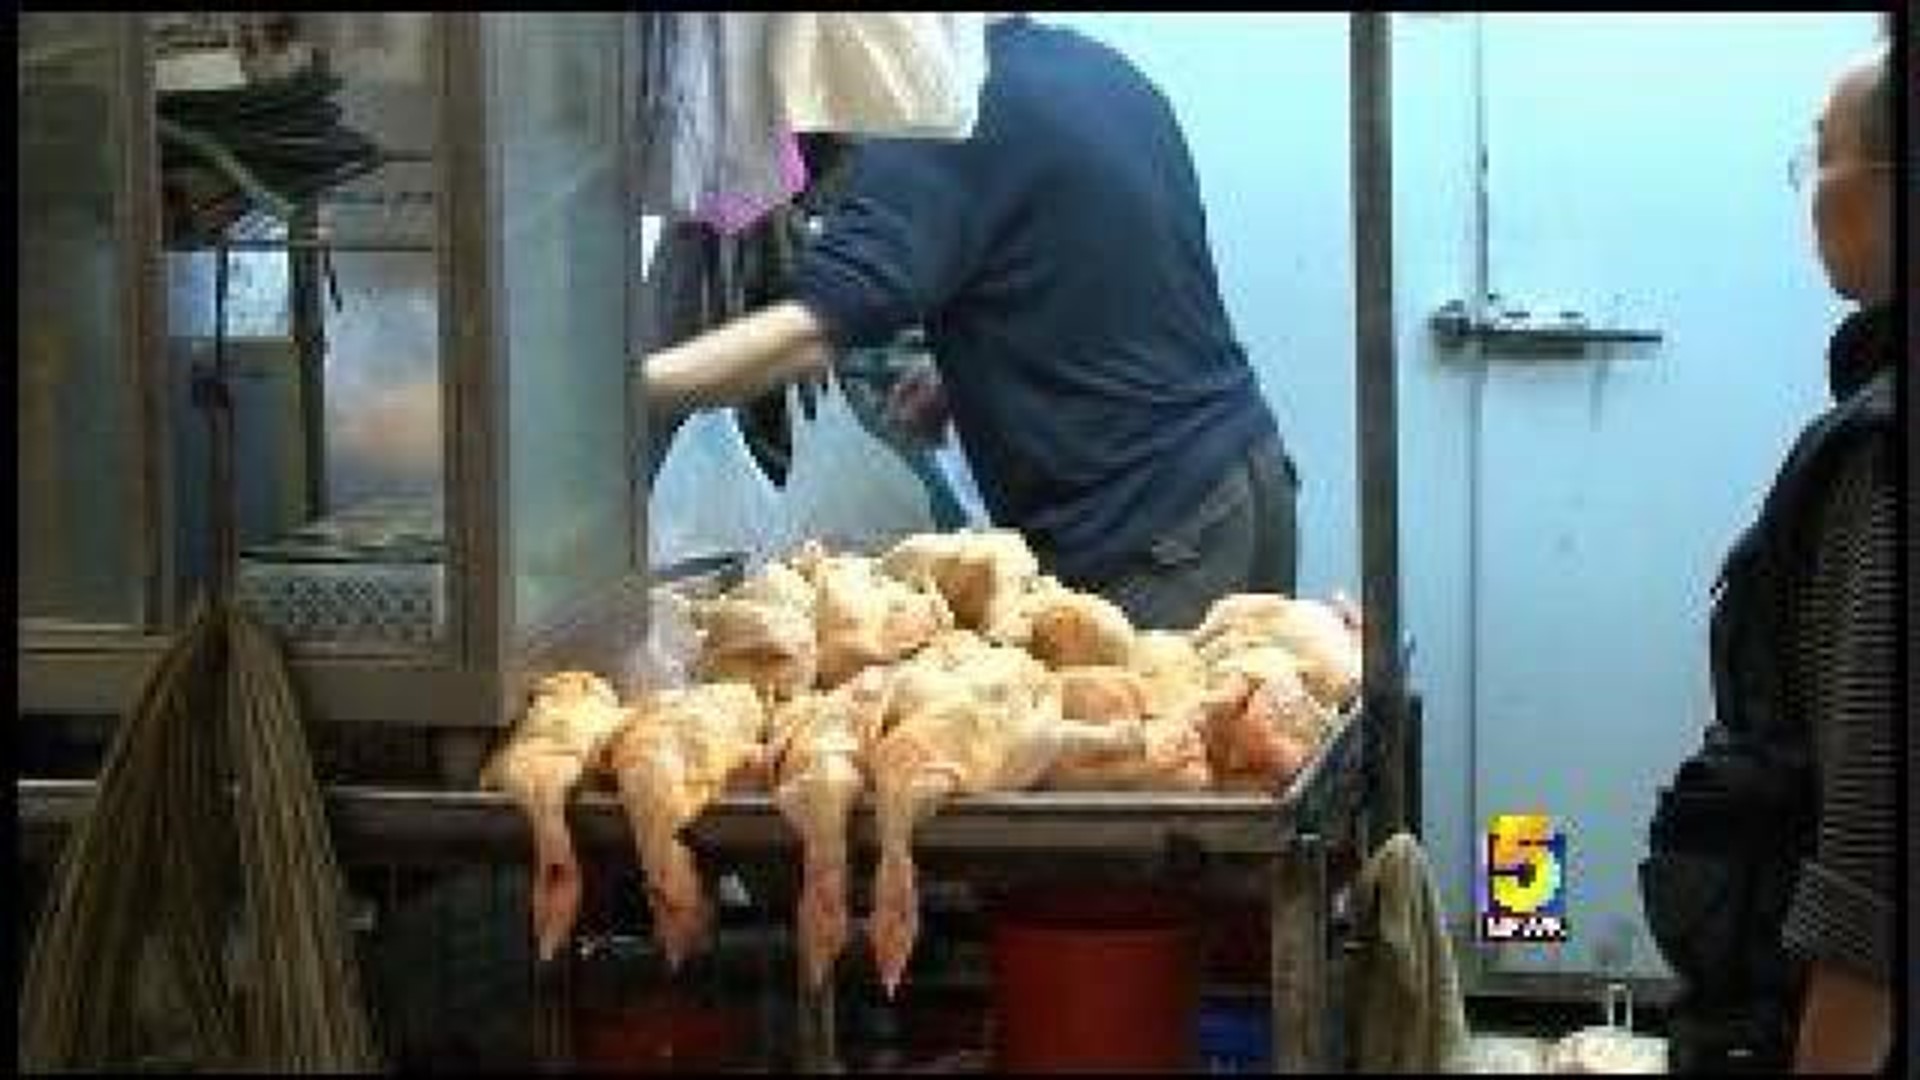 Poultry Ban